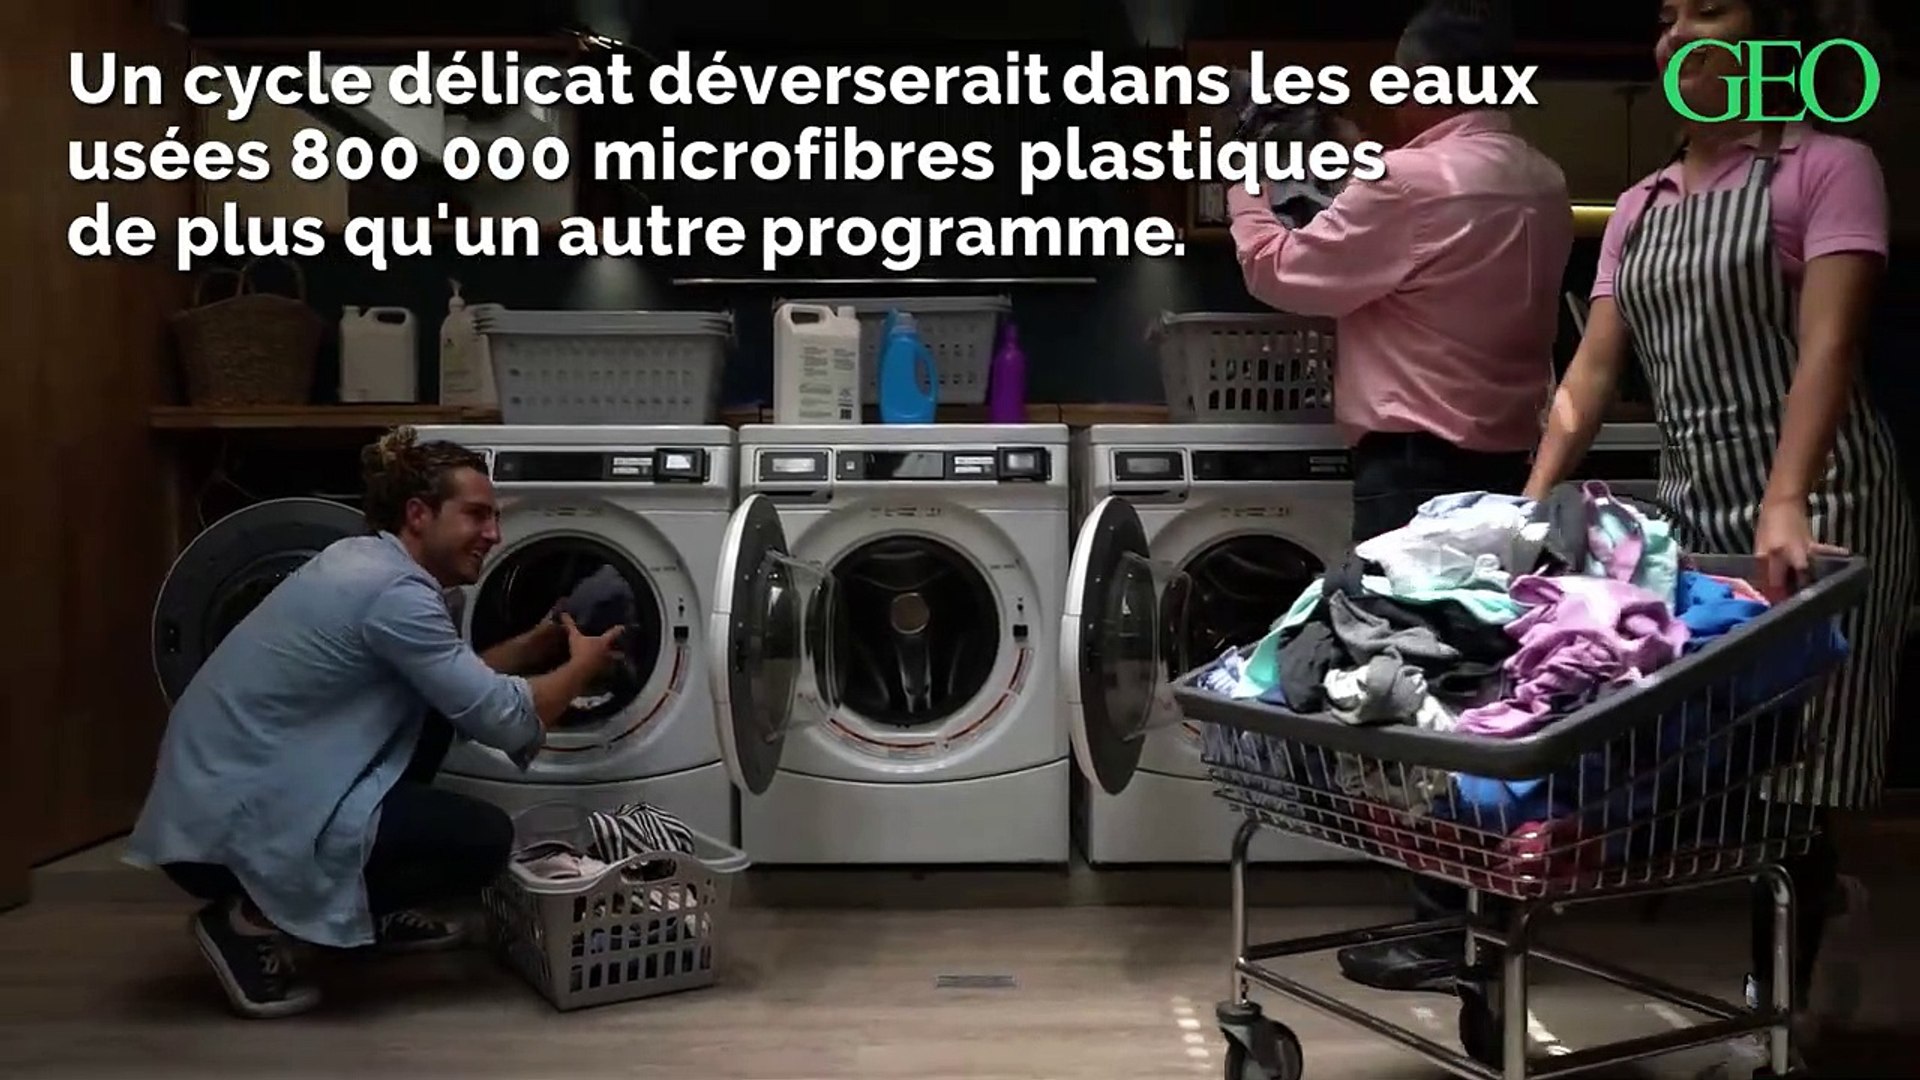 Le programme délicat des machines à laver serait très nocif pour la planète  - Vidéo Dailymotion